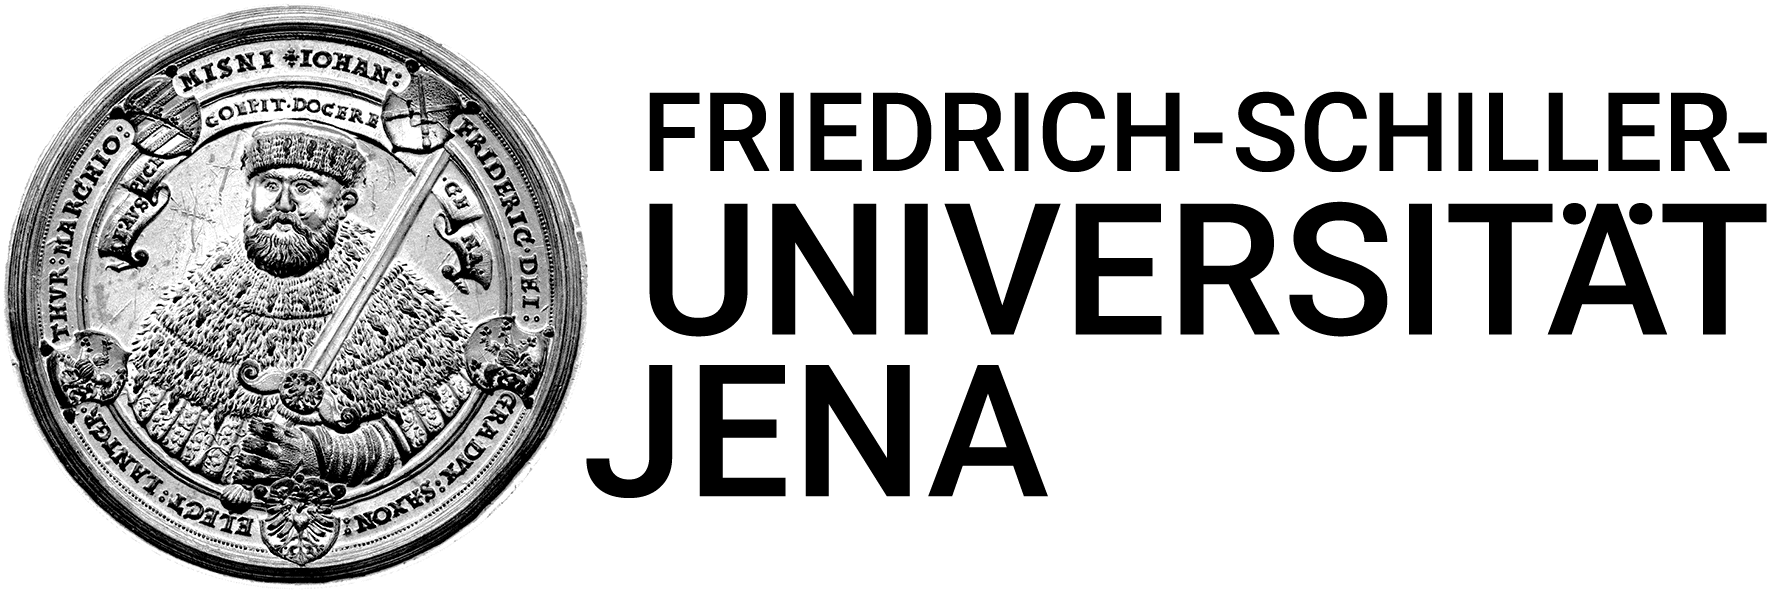 Friedrich-Schiller-Universität Jena